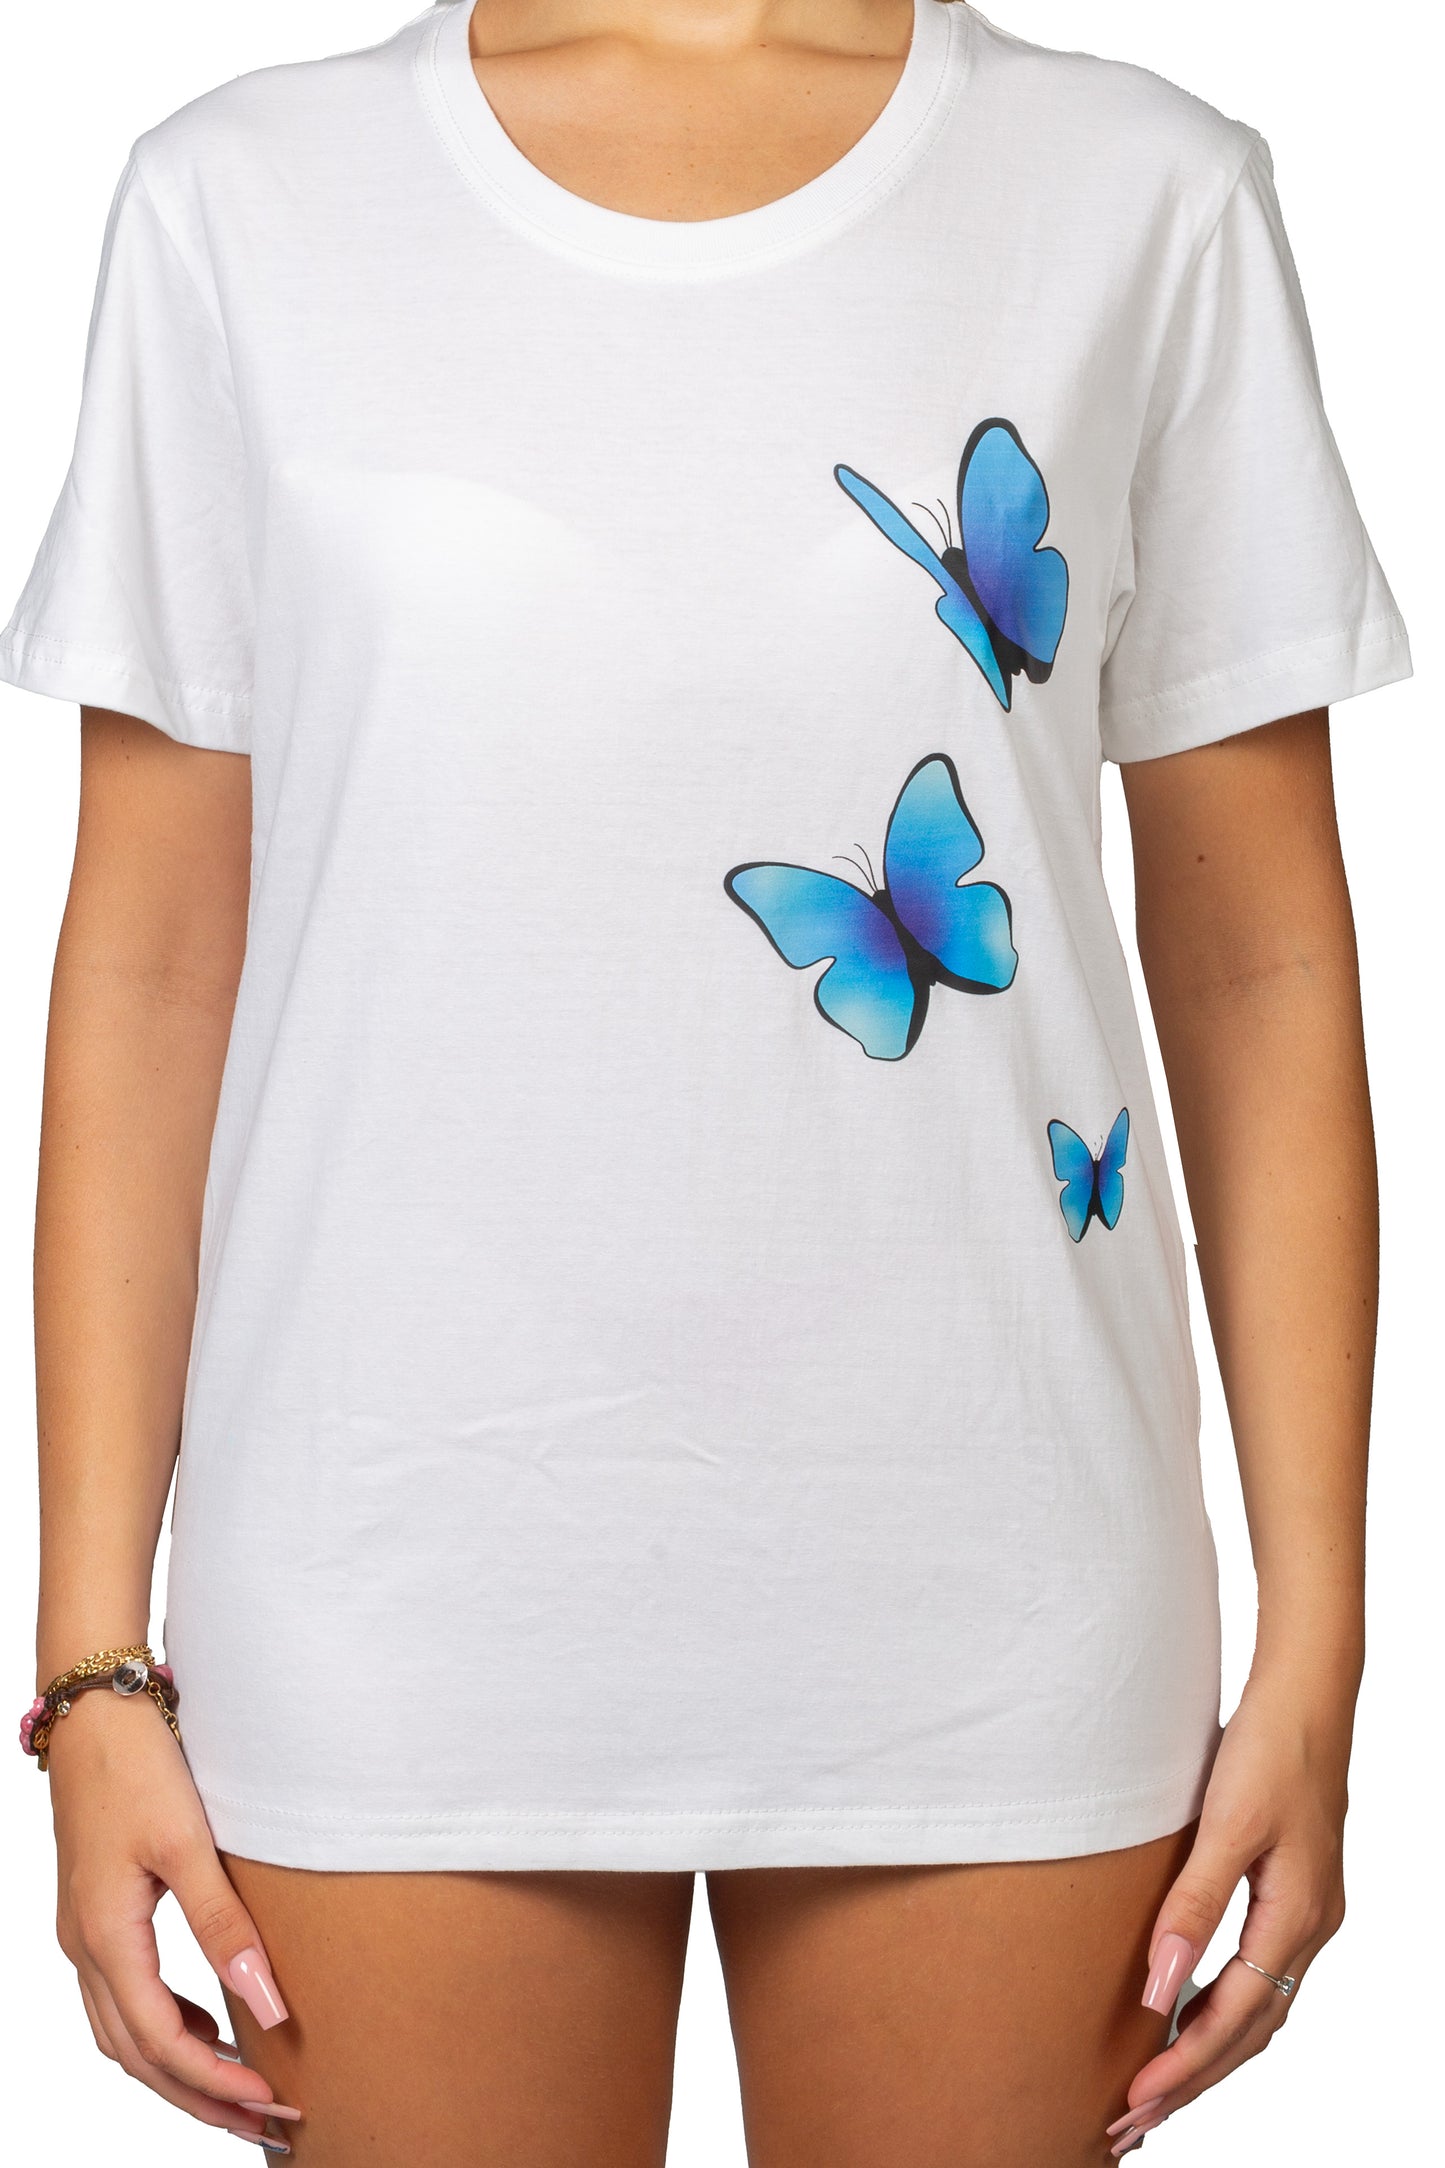 🦋💫 COLLEZIONE "LIBERTÀ" - Maglietta Large Butterflies 💫🦋